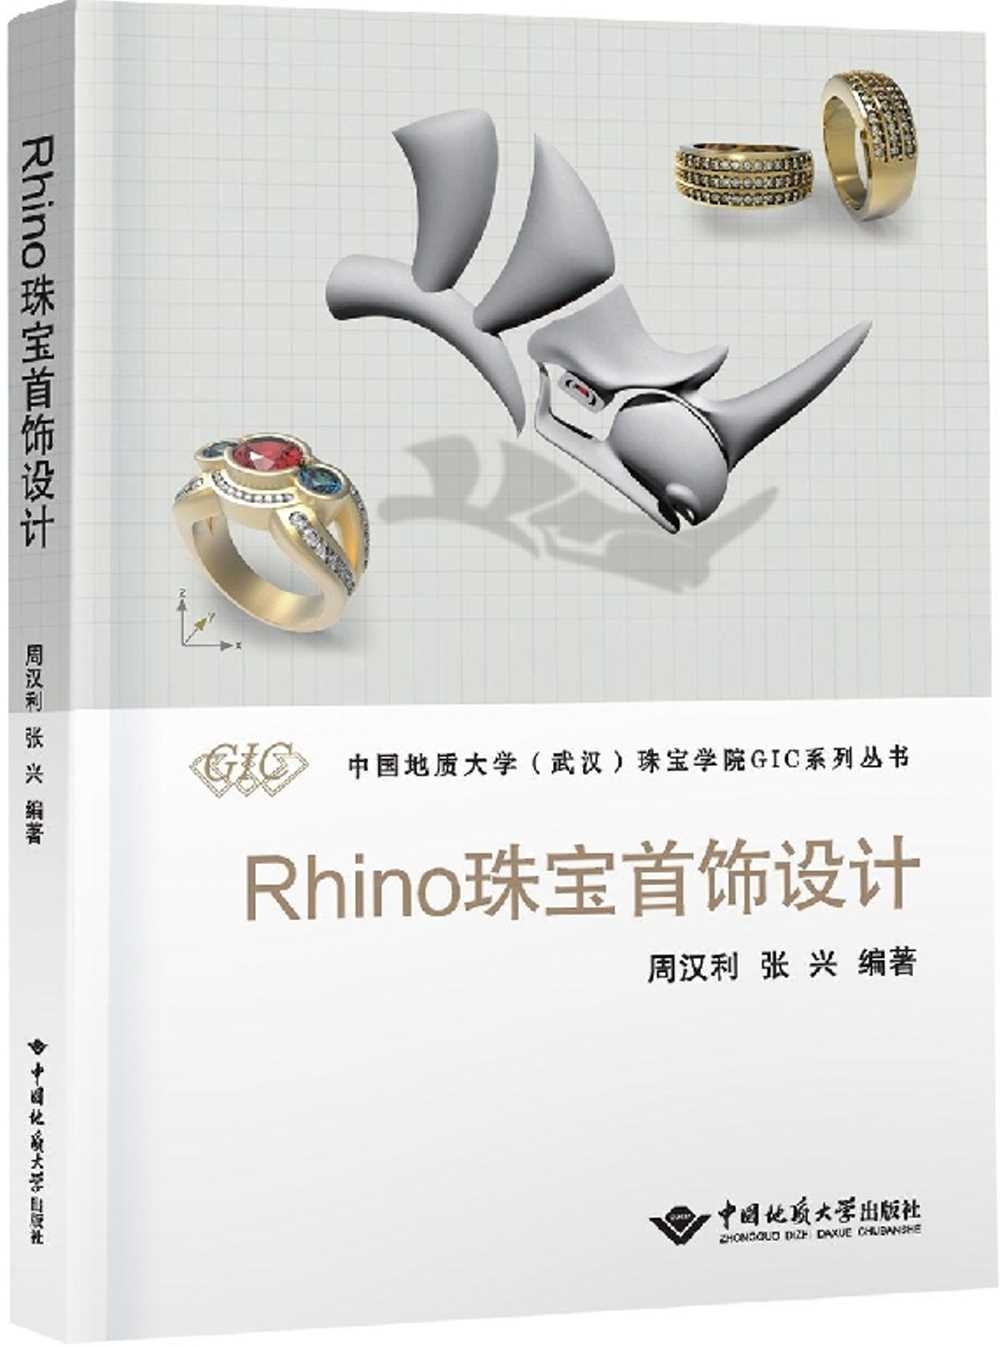 Rhino珠寶首飾設計